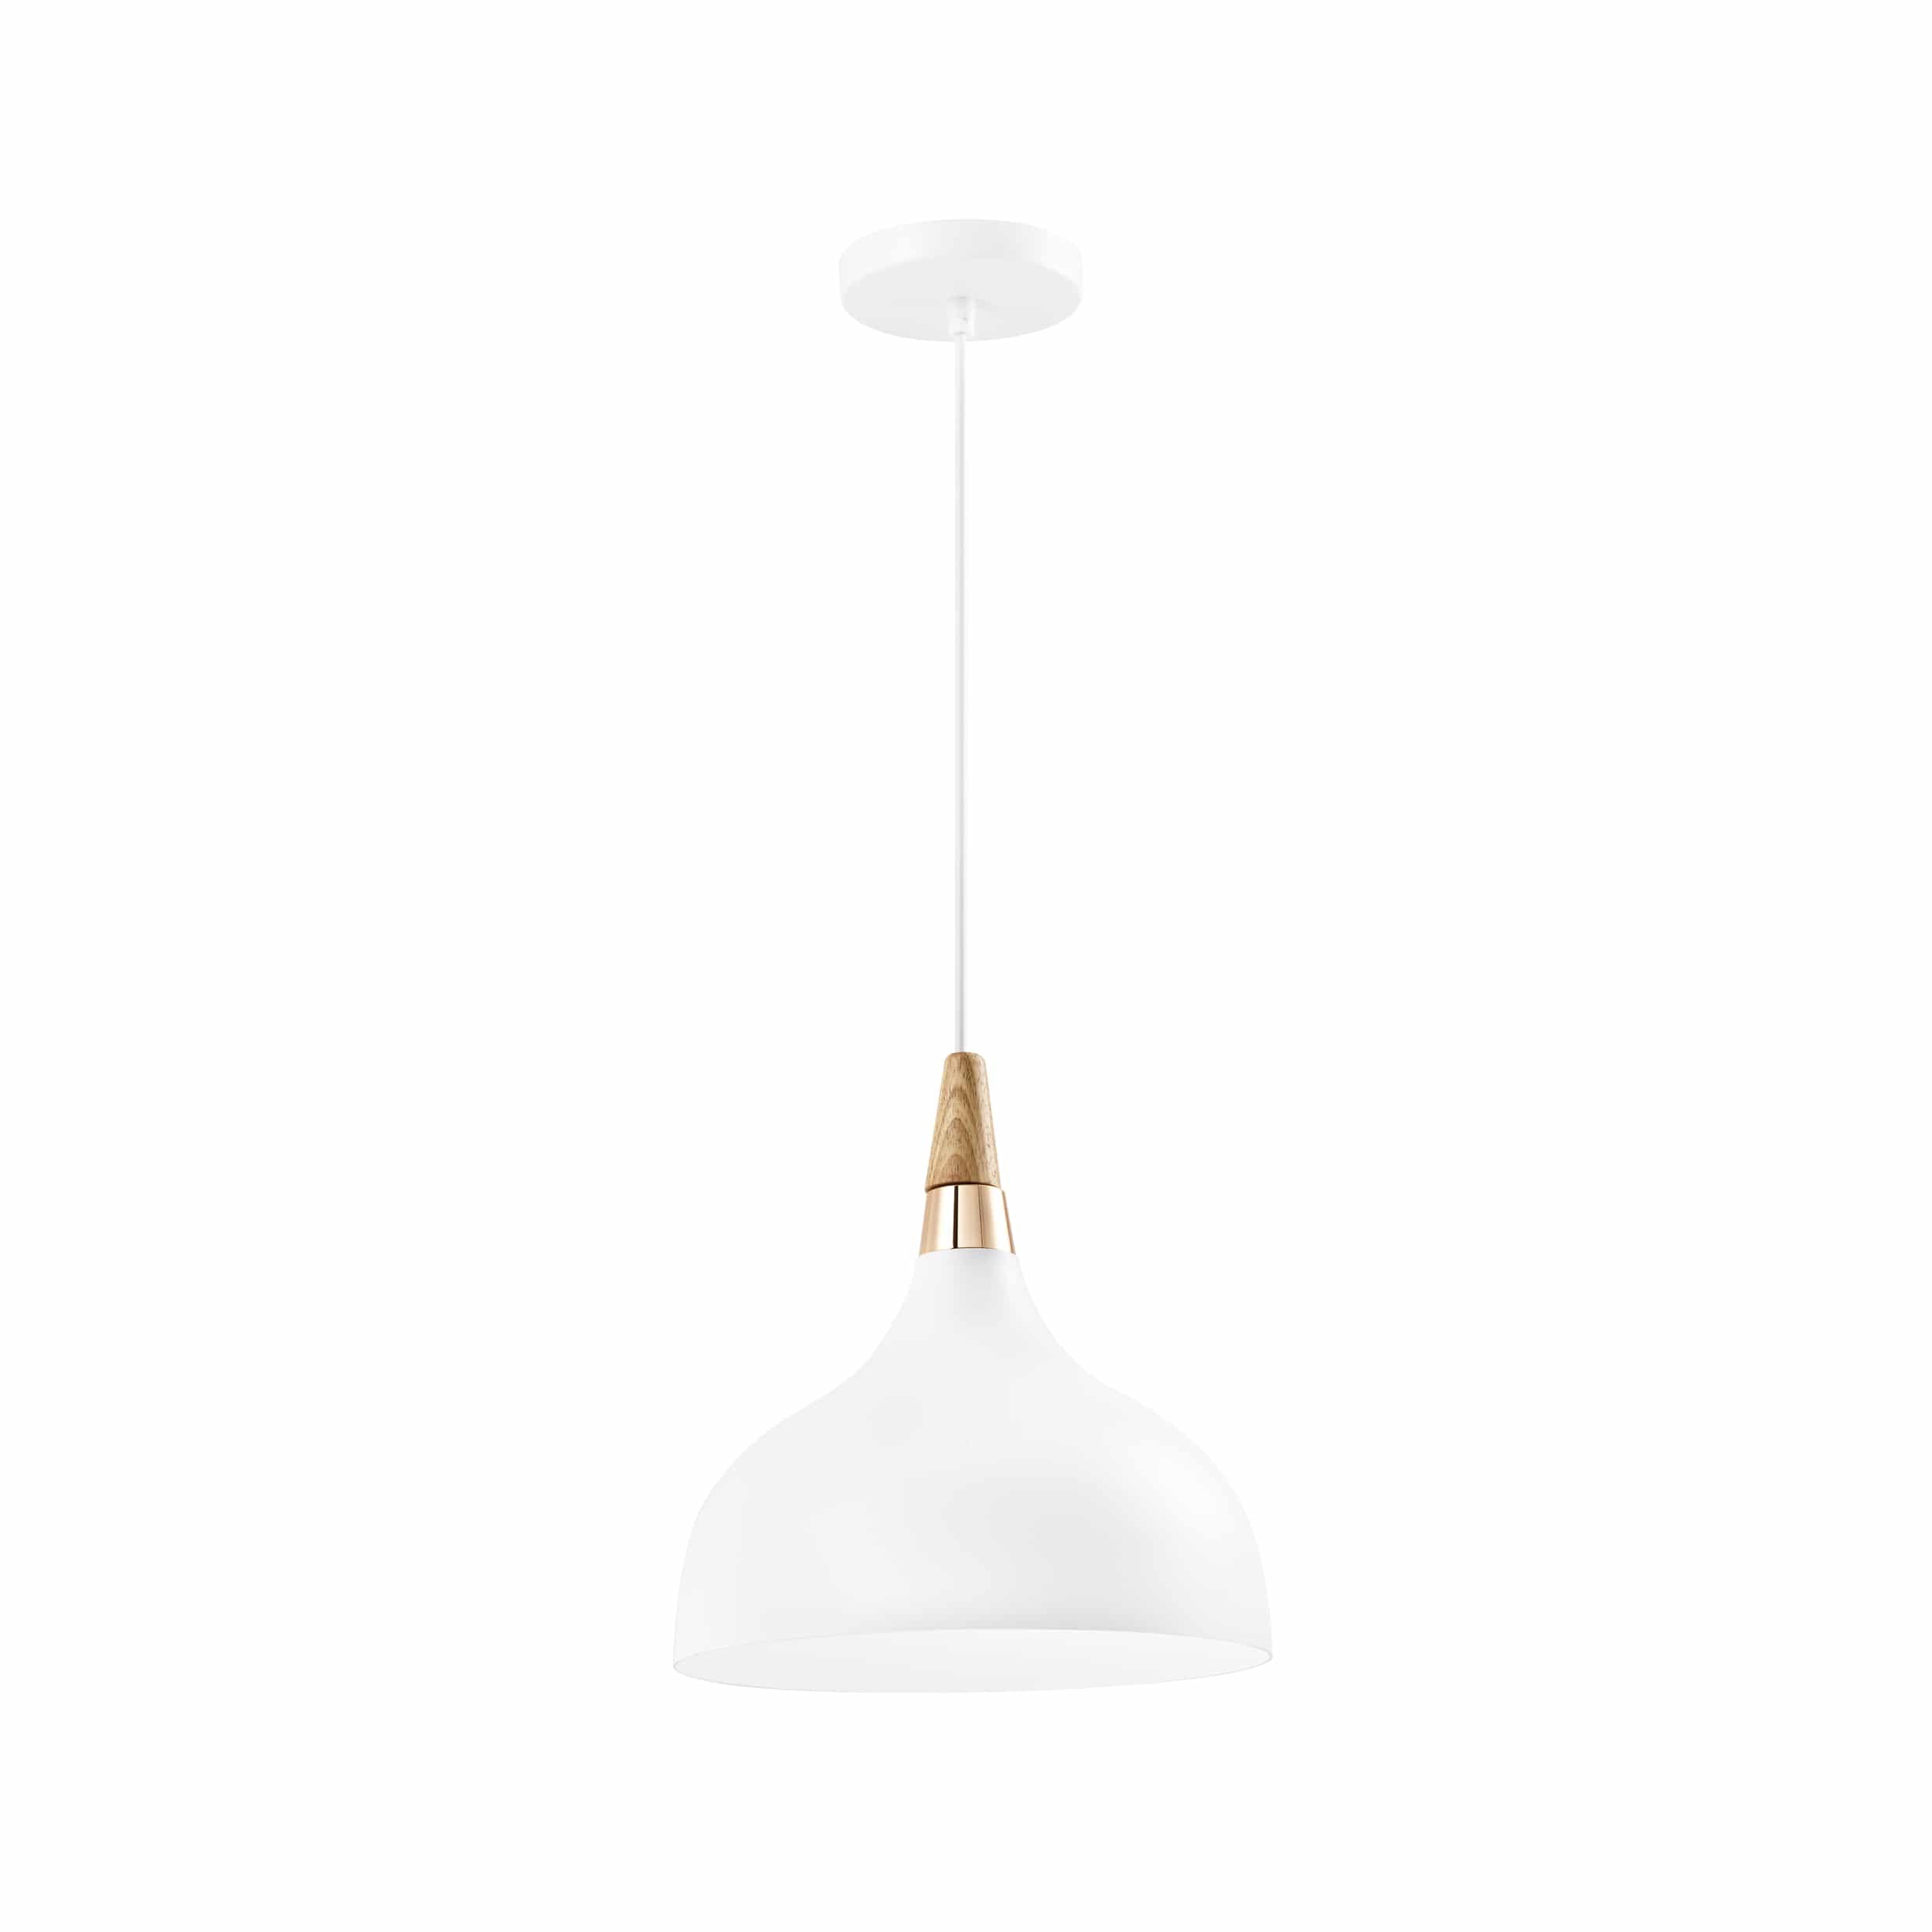 Hanglamp in de kleur wit met hout en metaal voor in de woonkamer